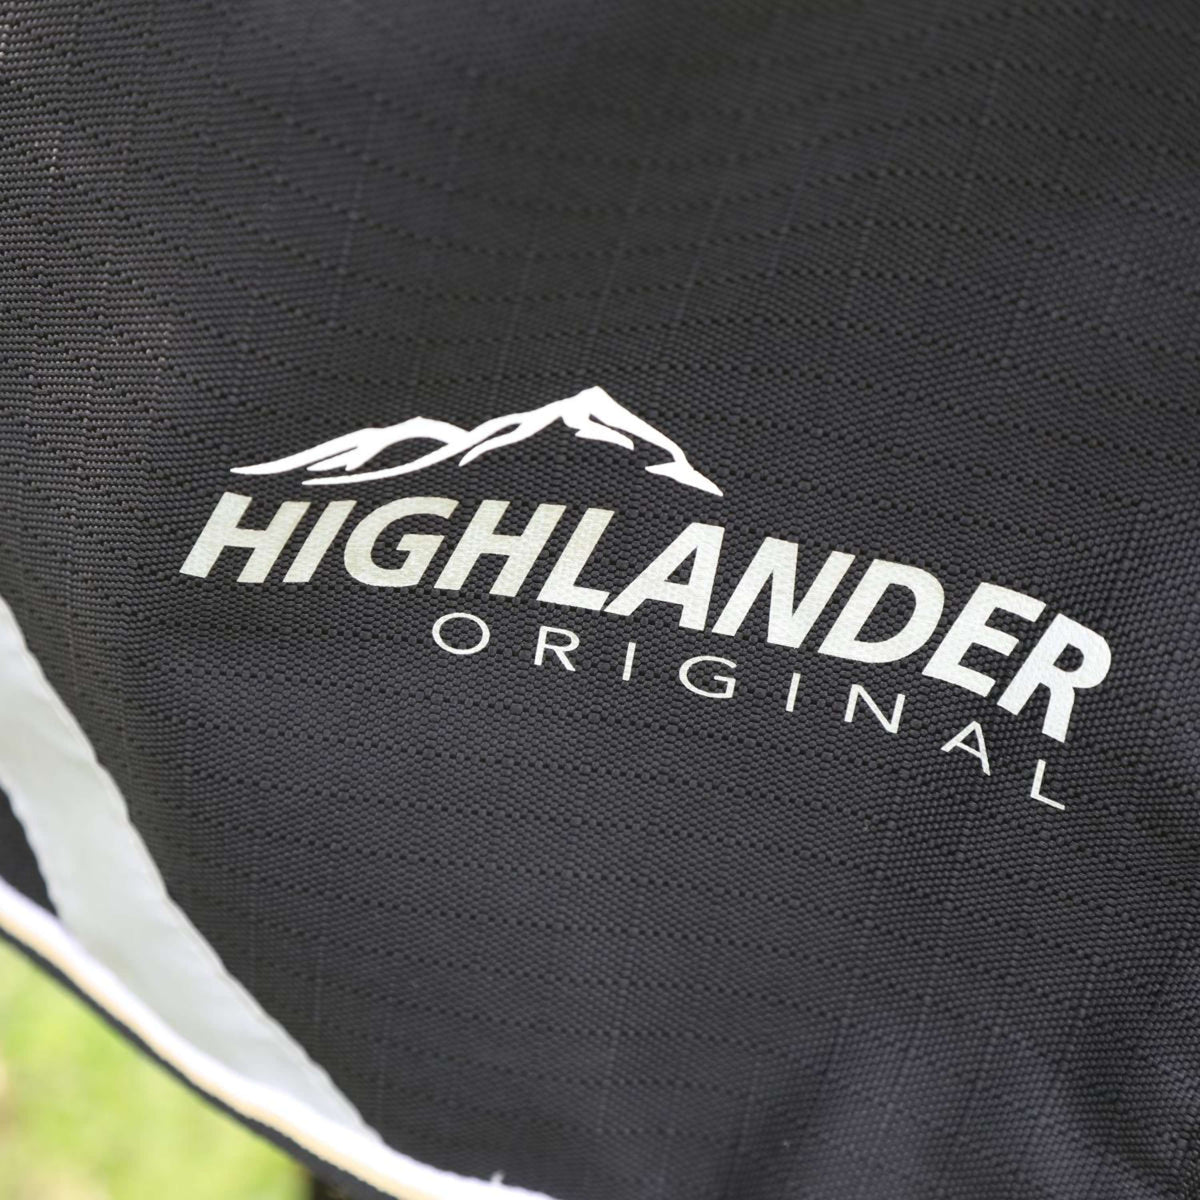 Highlander Plus Couverture d'Hiver Turnout 200g Combo Noir